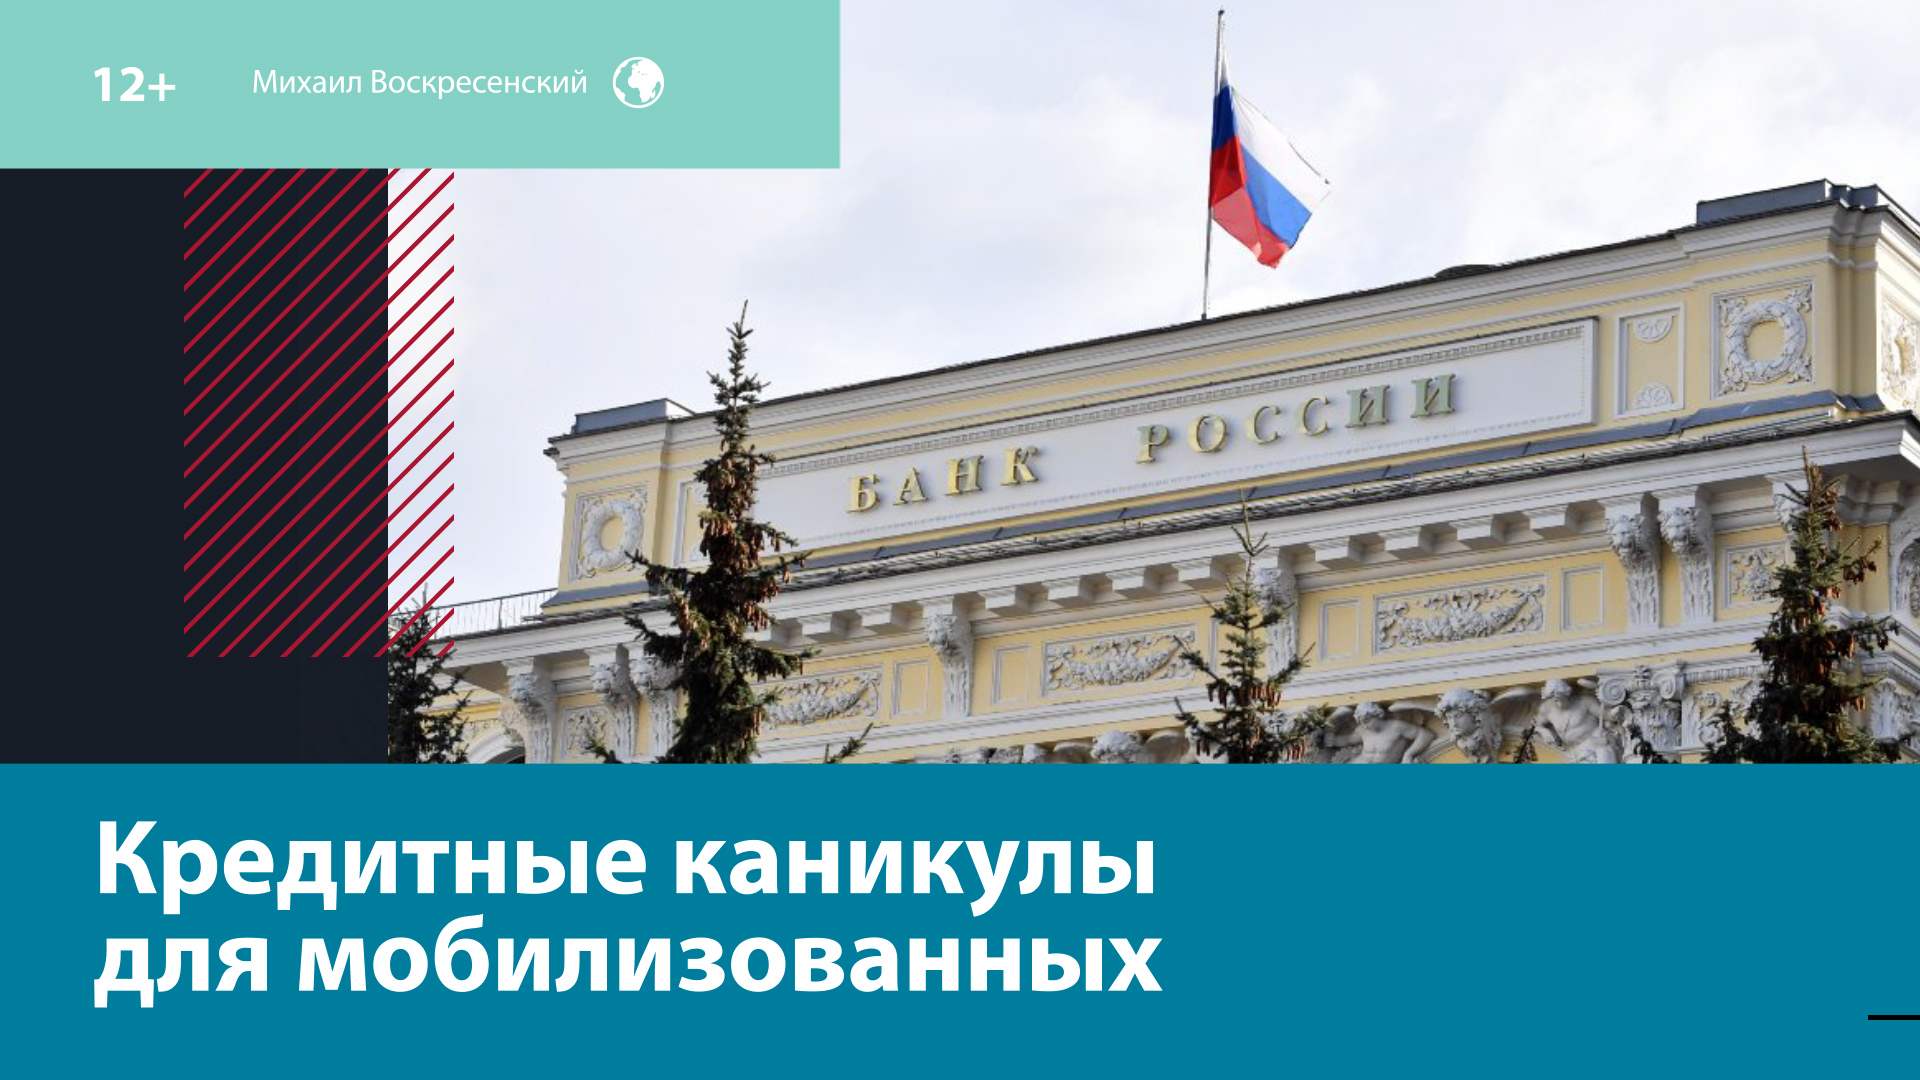 Кредитные каникулы для мобилизованных: как будут работать? — Москва FM